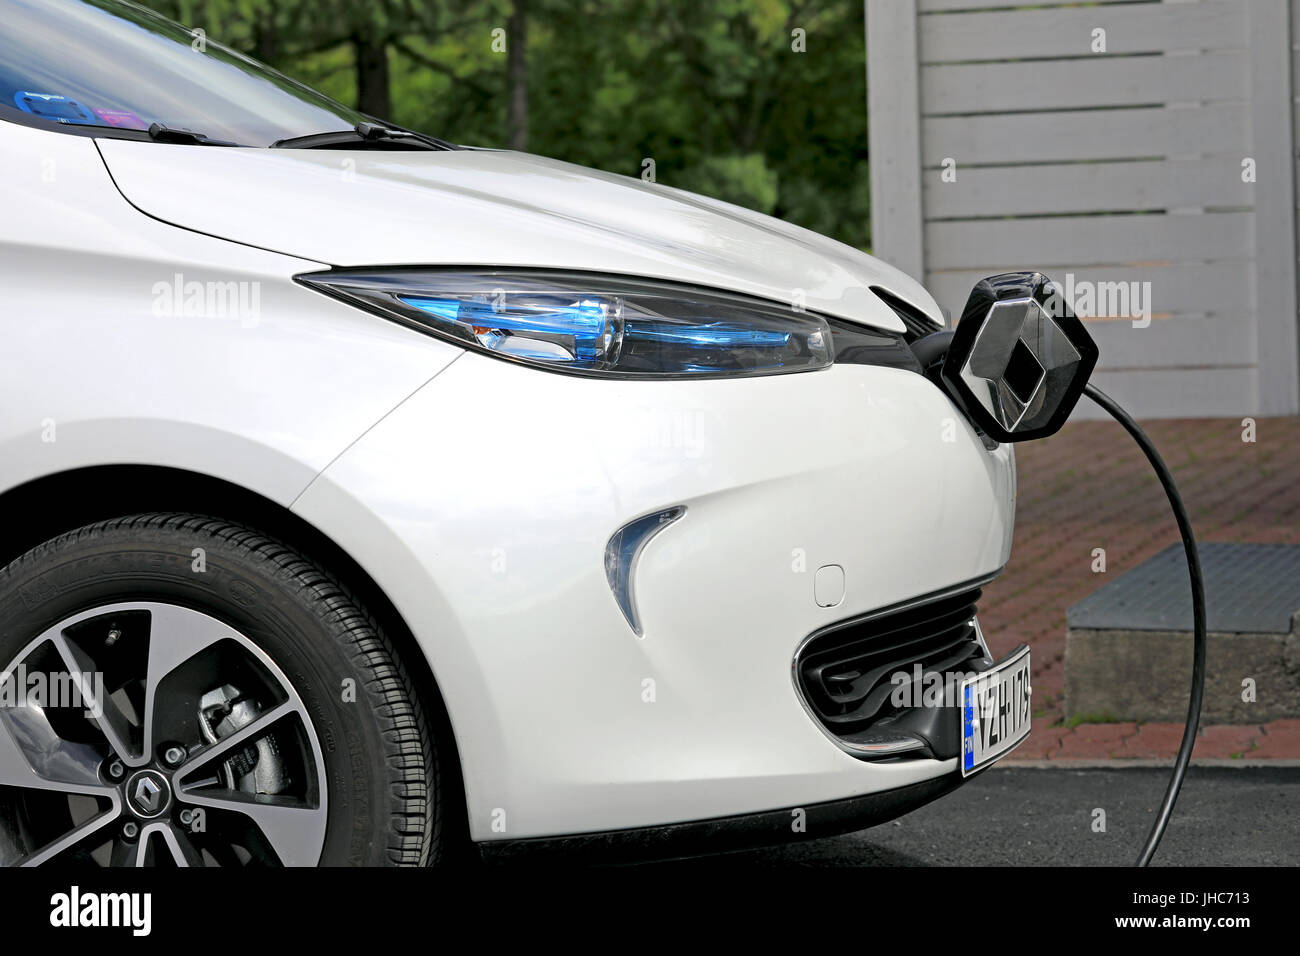 FORSSA, Finlandia - 23 giugno 2017: Renault Zoe ZE 40 auto elettrica è collegato alla presa di corrente per caricare la batteria. Il Zoe supporta AC solo per ricarica. Foto Stock